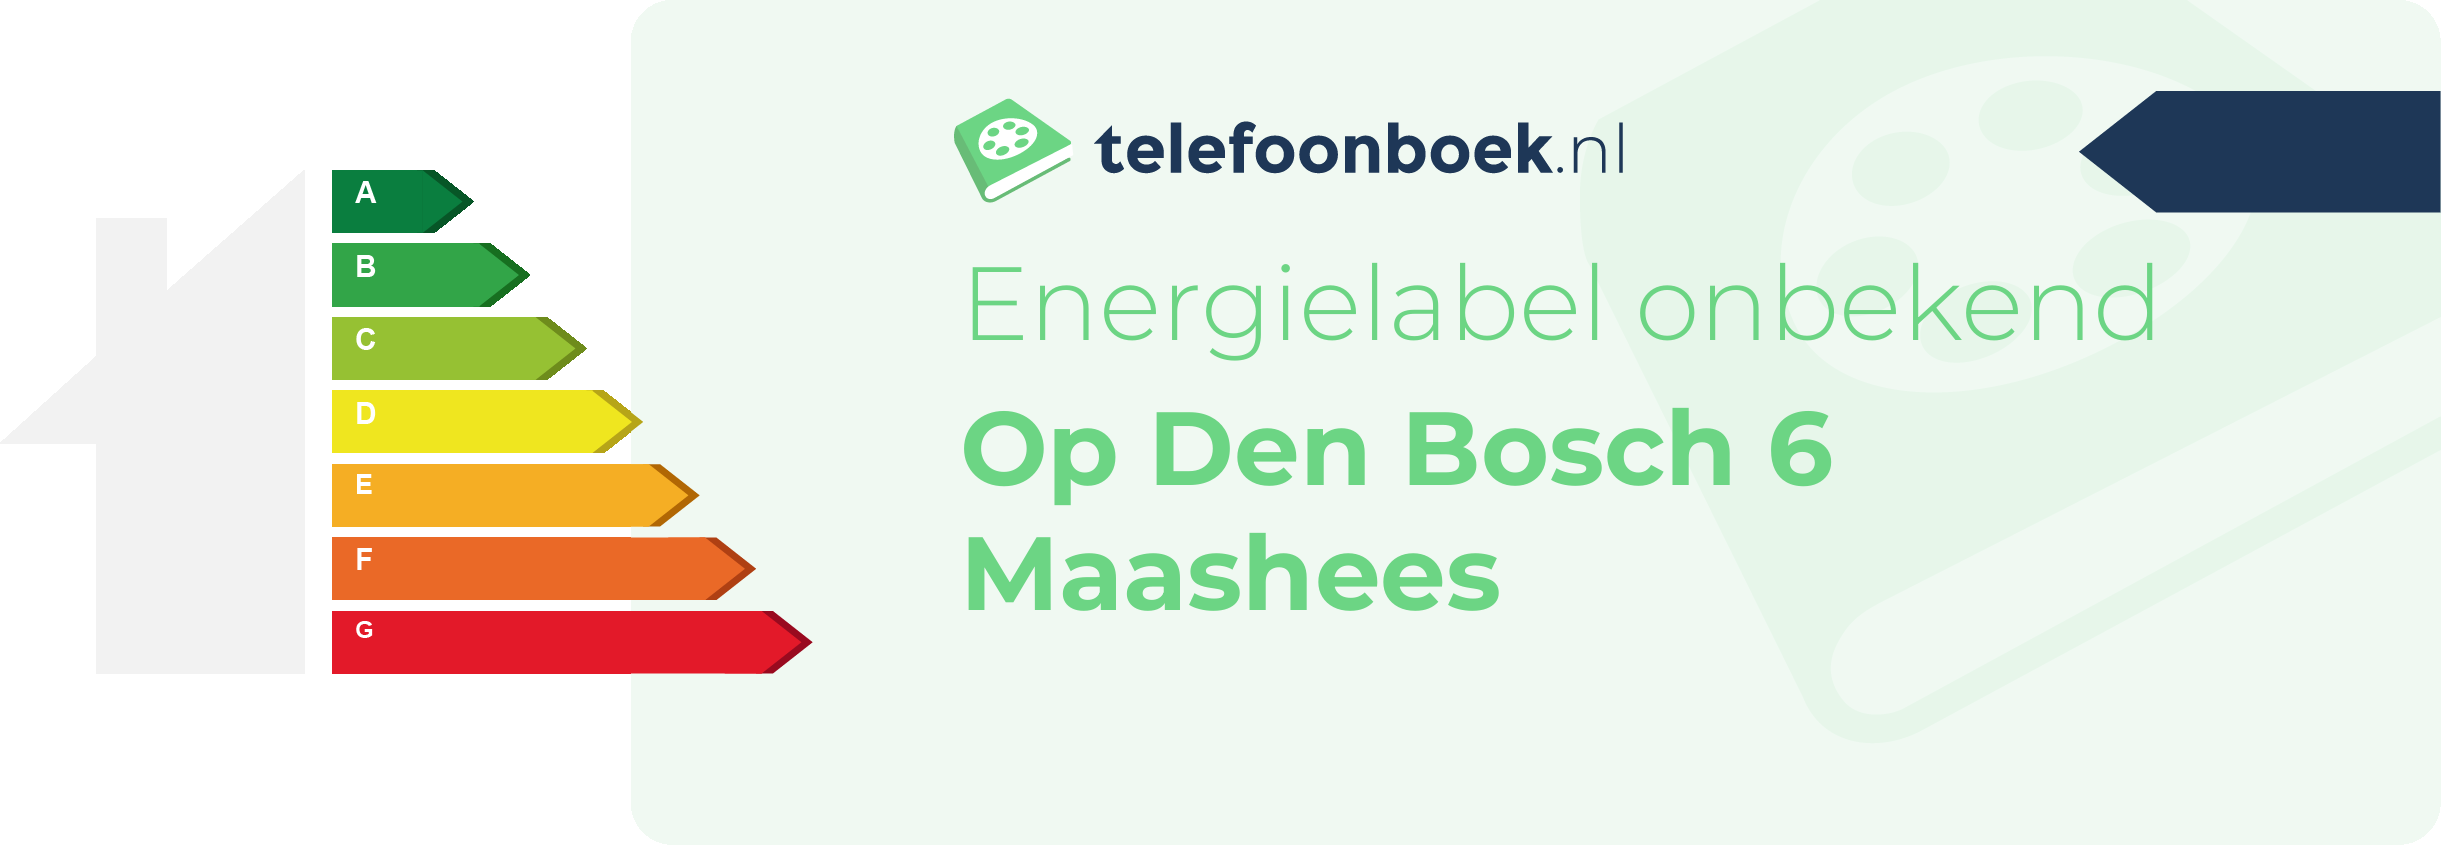 Energielabel Op Den Bosch 6 Maashees